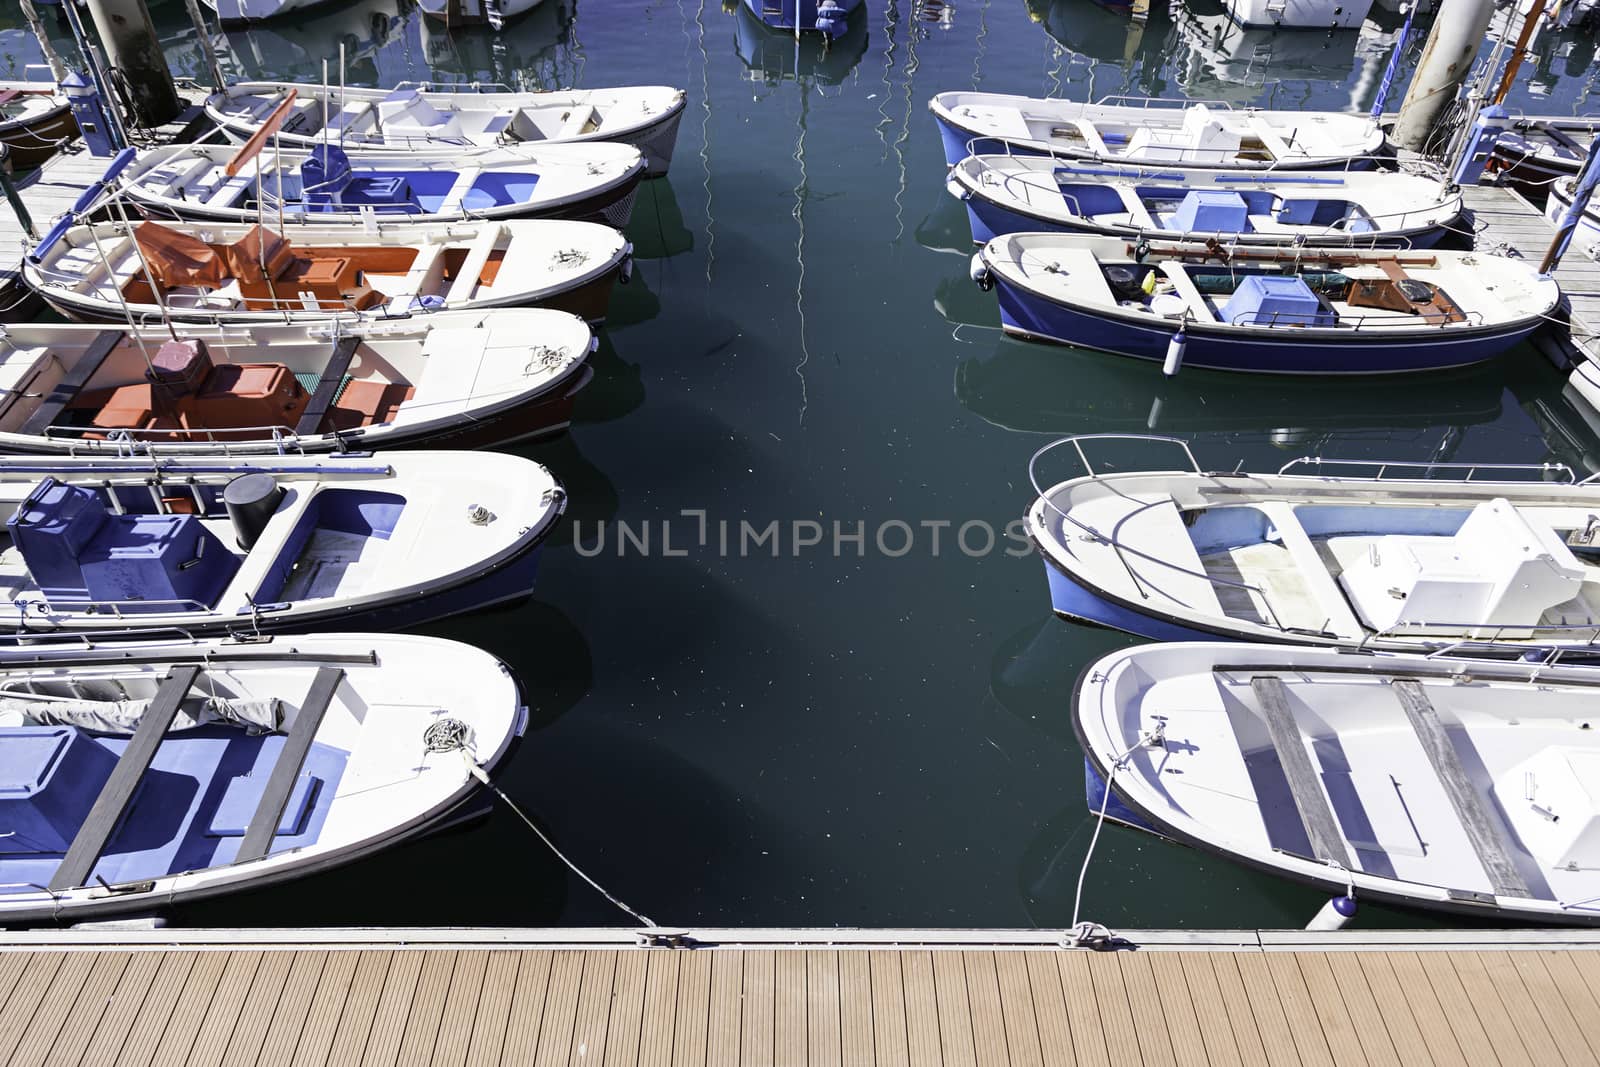 Boats moored on a seaside pier by esebene